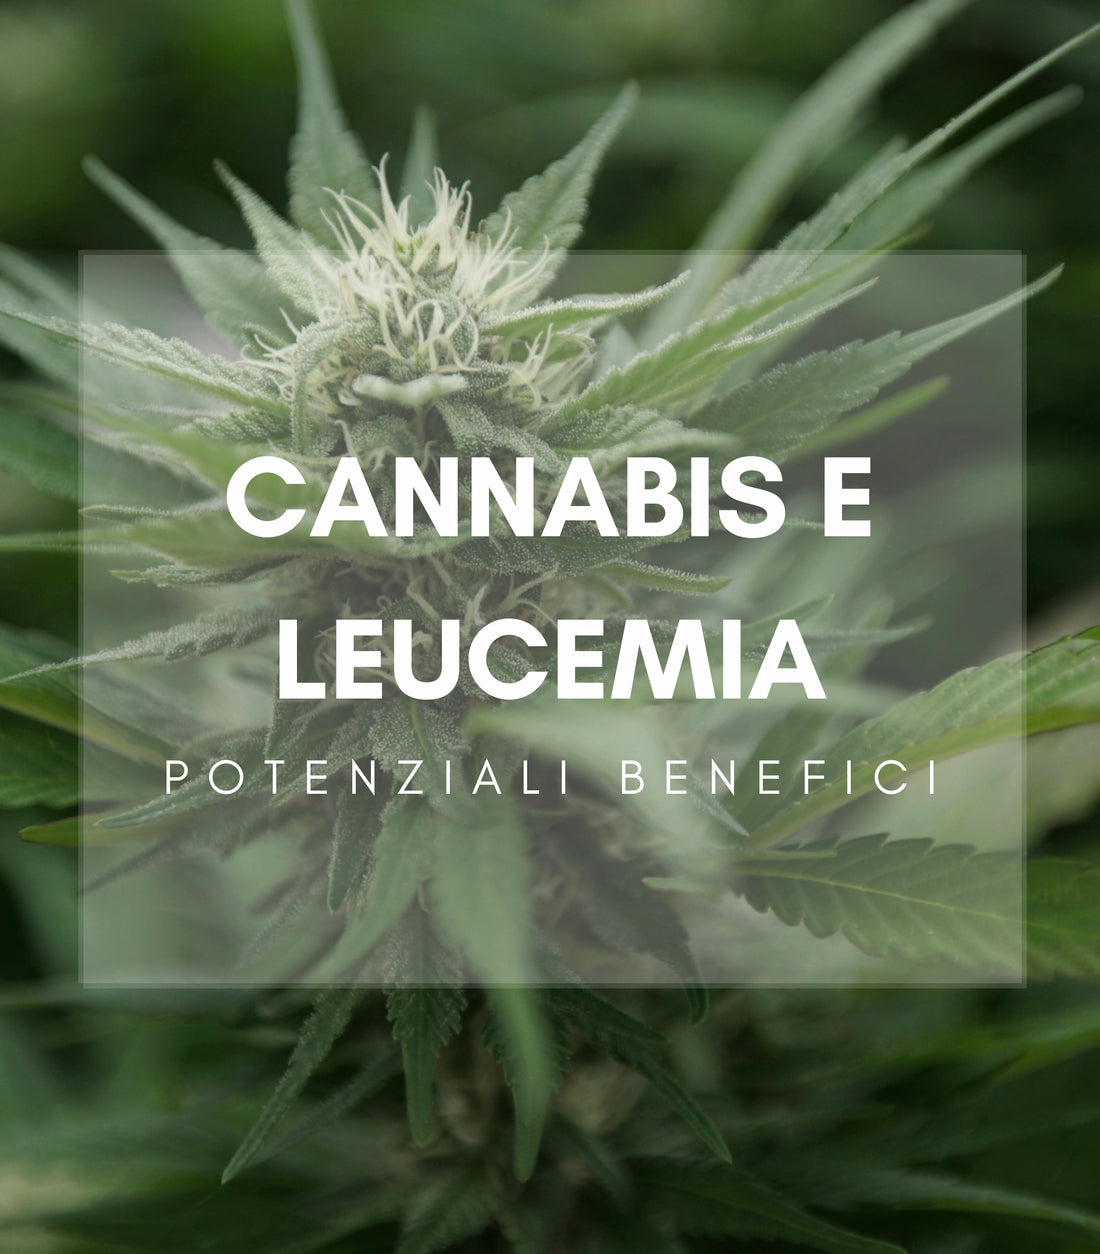 Potenziali benefici della Cannabis nel trattamento della Leucemia